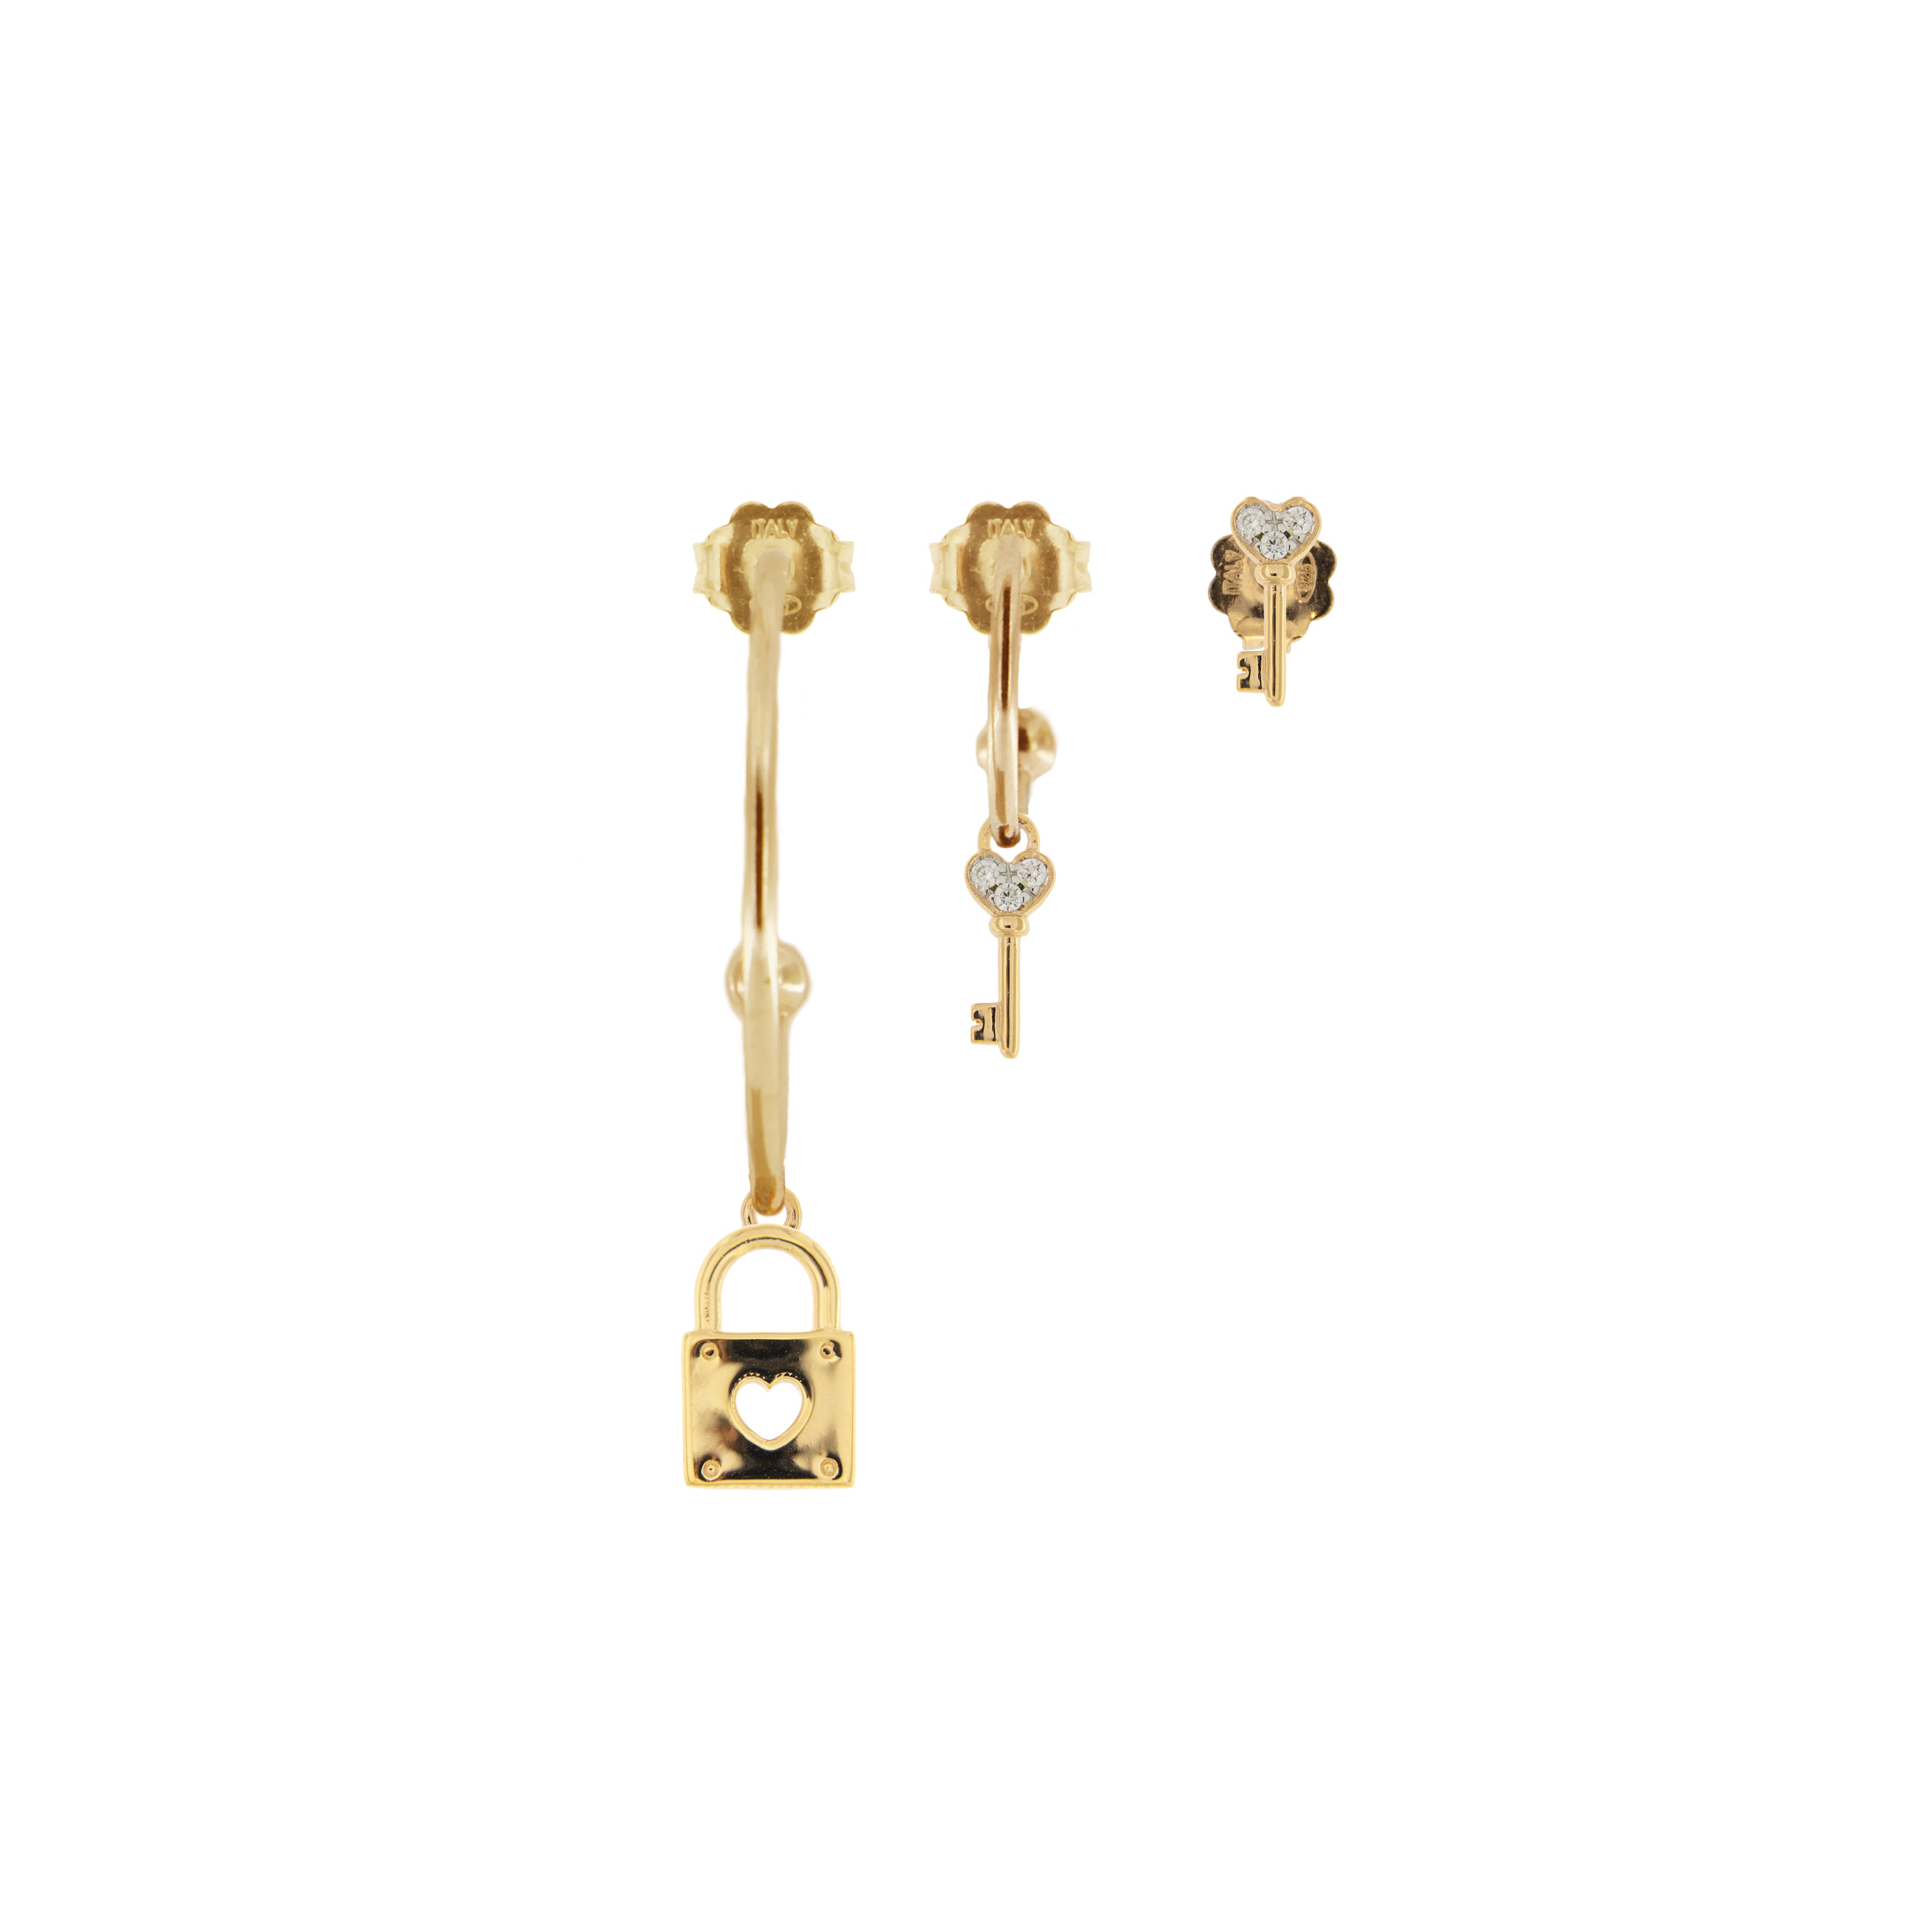 3 Set Earrings Pieces - Lock / Key / Key